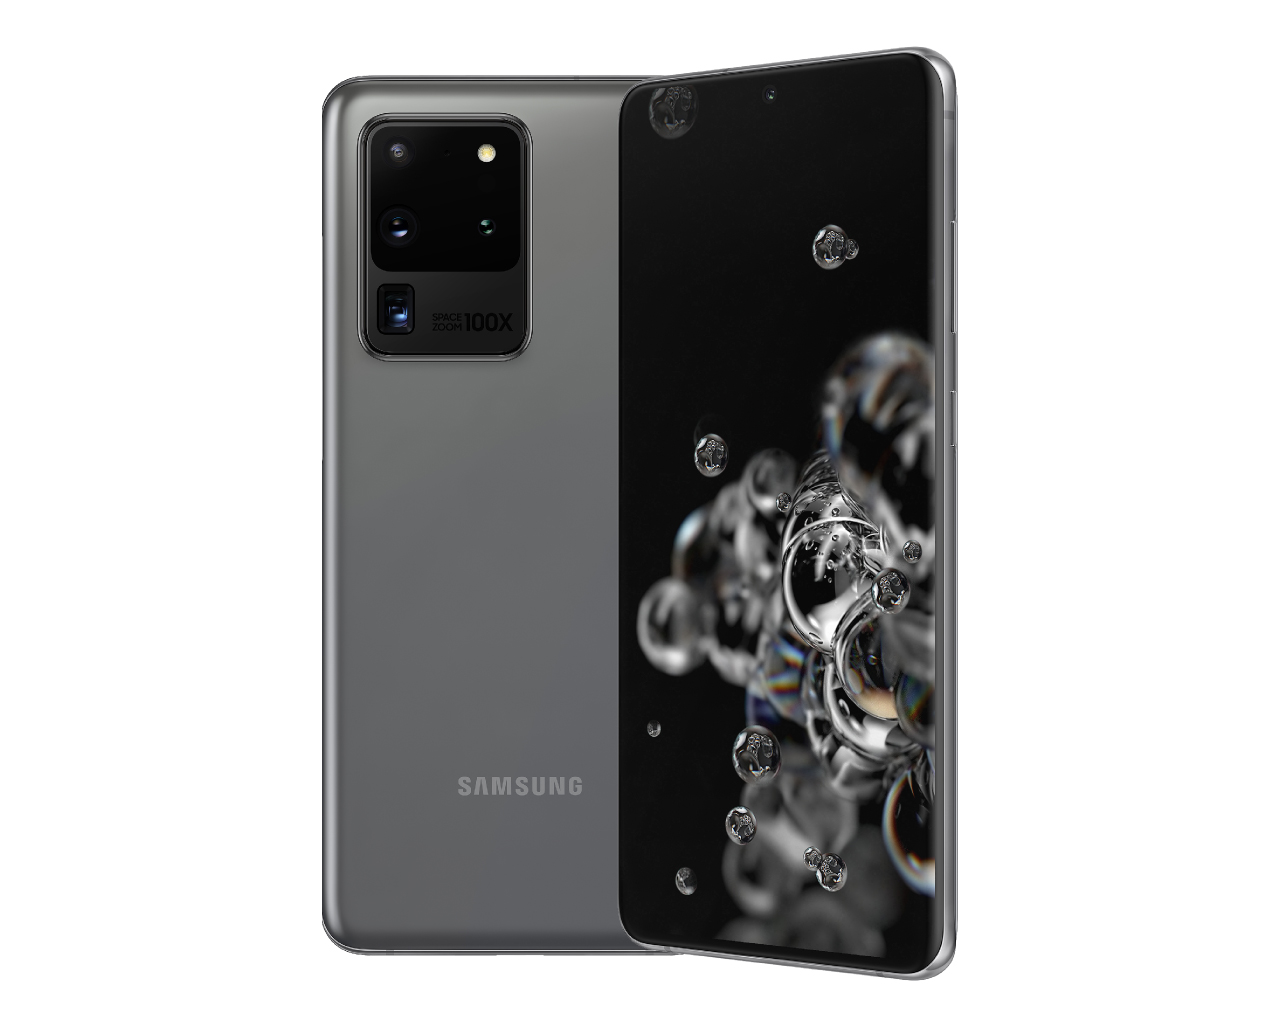 Mok Shetland Onvergetelijk Samsung Galaxy S20 Ultra - Notebookcheck.net External Reviews